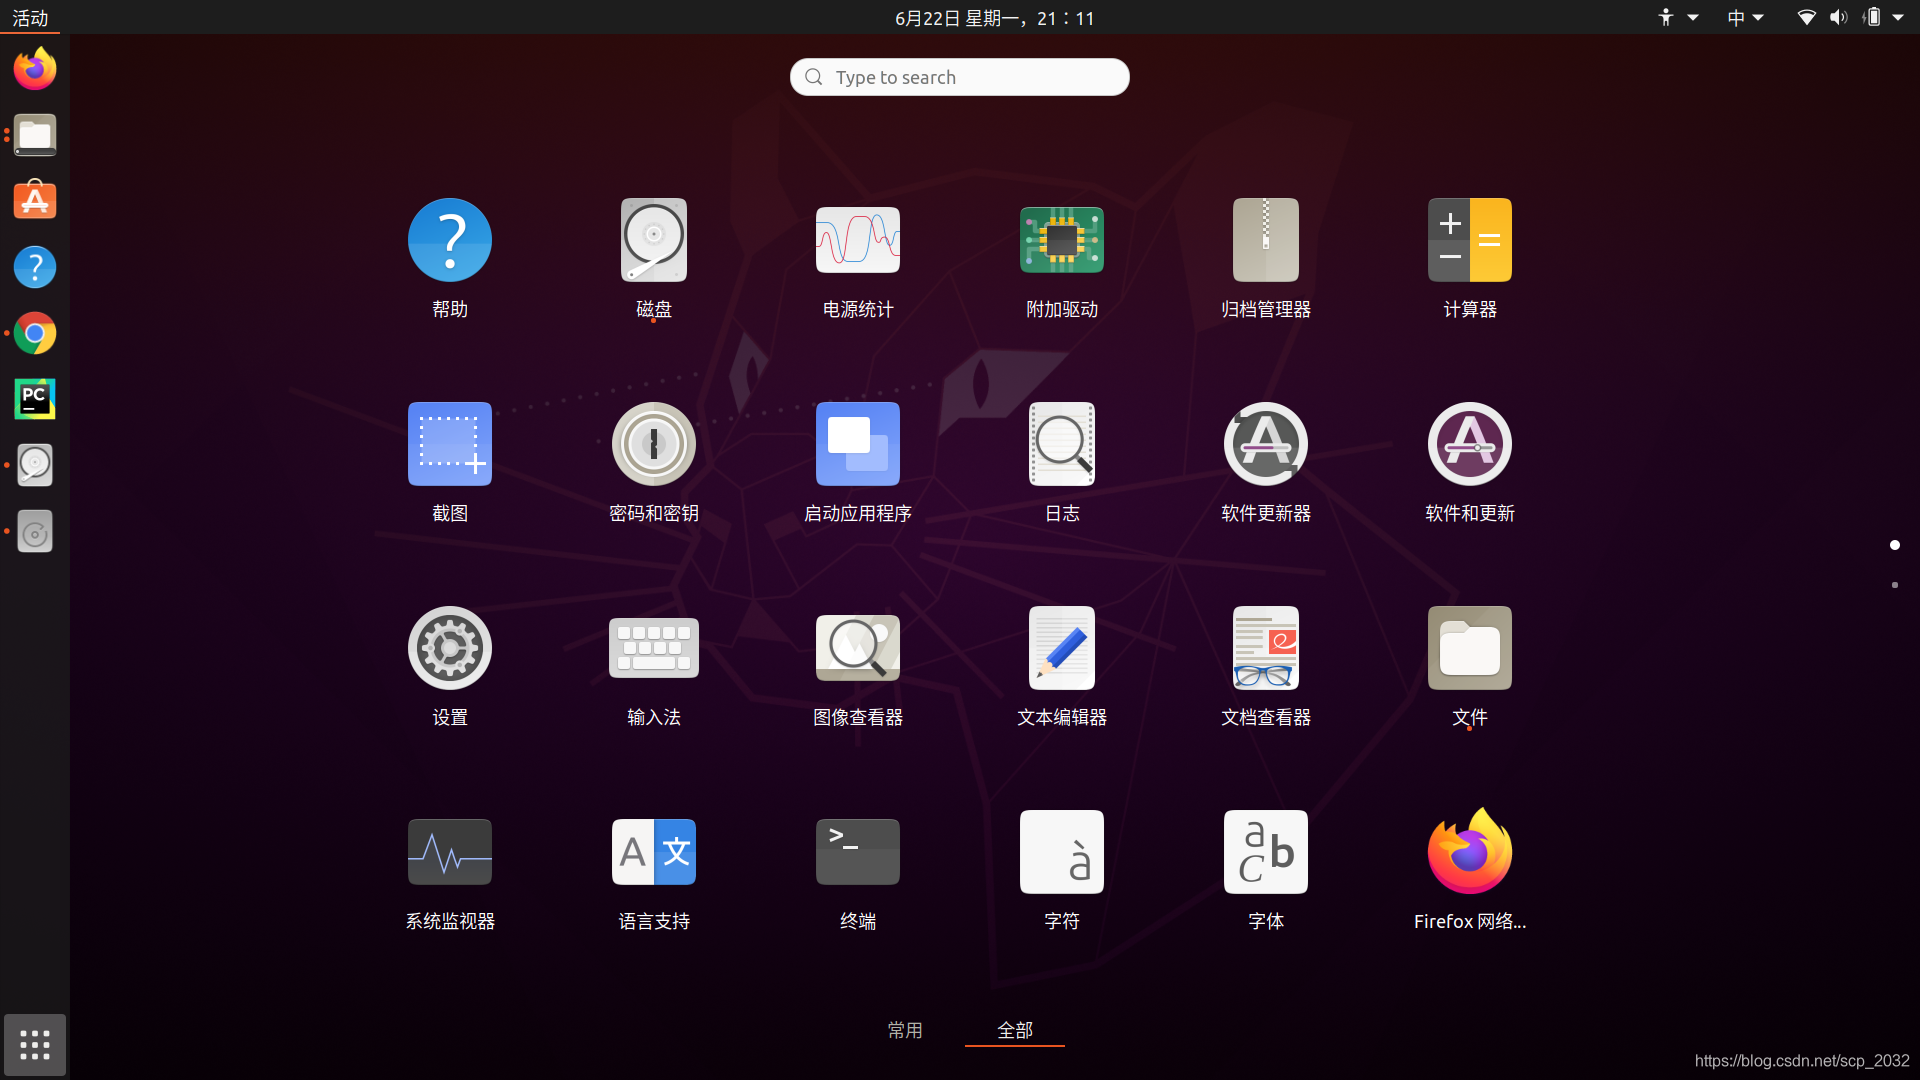 安卓与Ubuntu双系统：安装步骤、优势劣势对比与运用经验分享  第7张